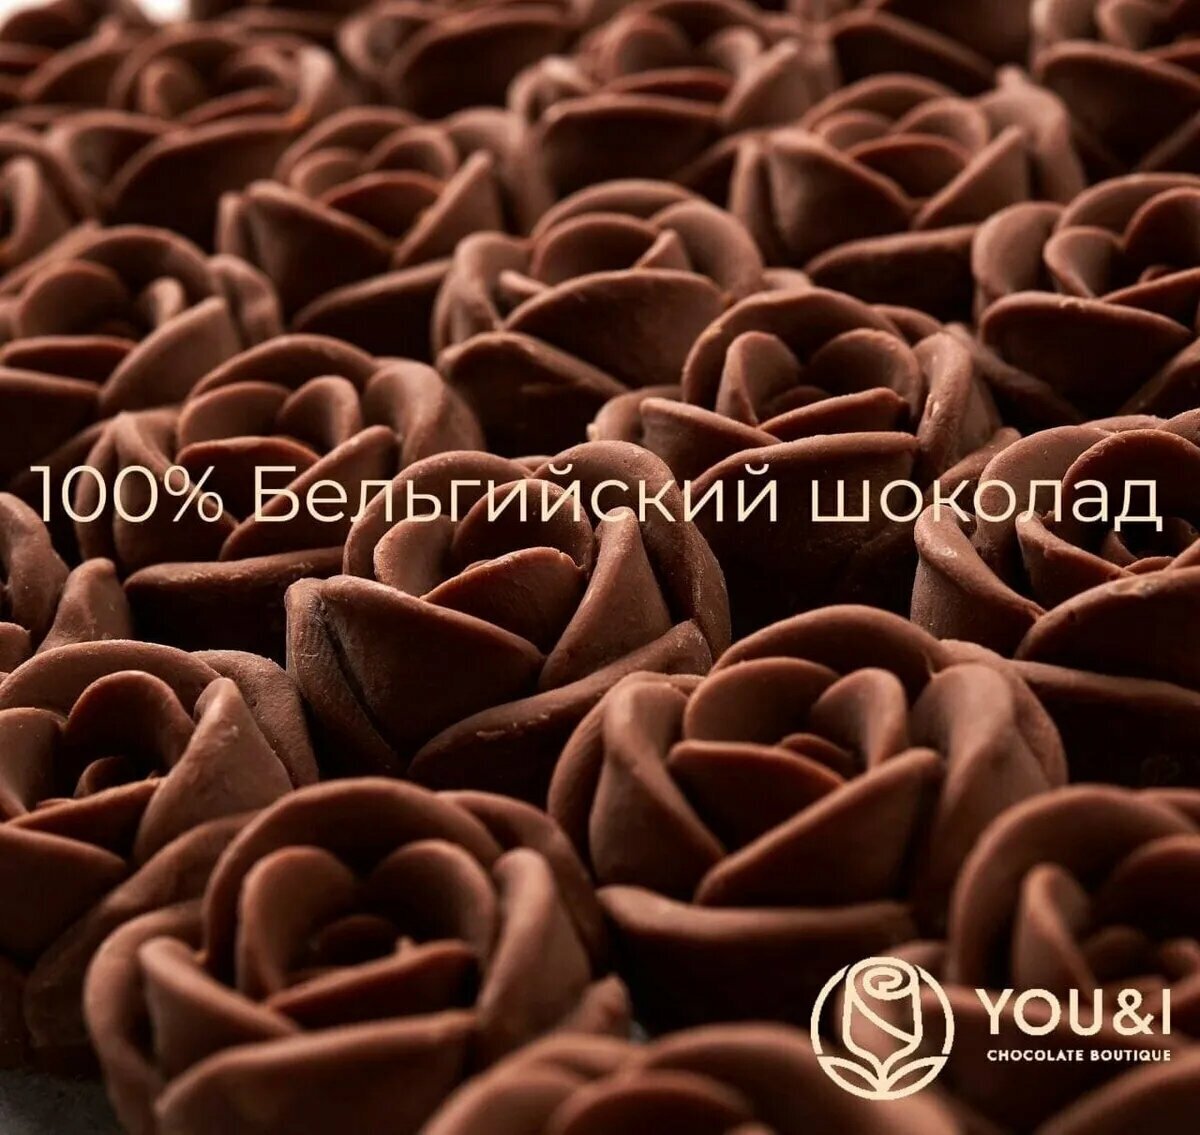 55 шоколадных роз в коробке Сердце You&i / Бельгийский шоколад / сладкий бокс - фотография № 7